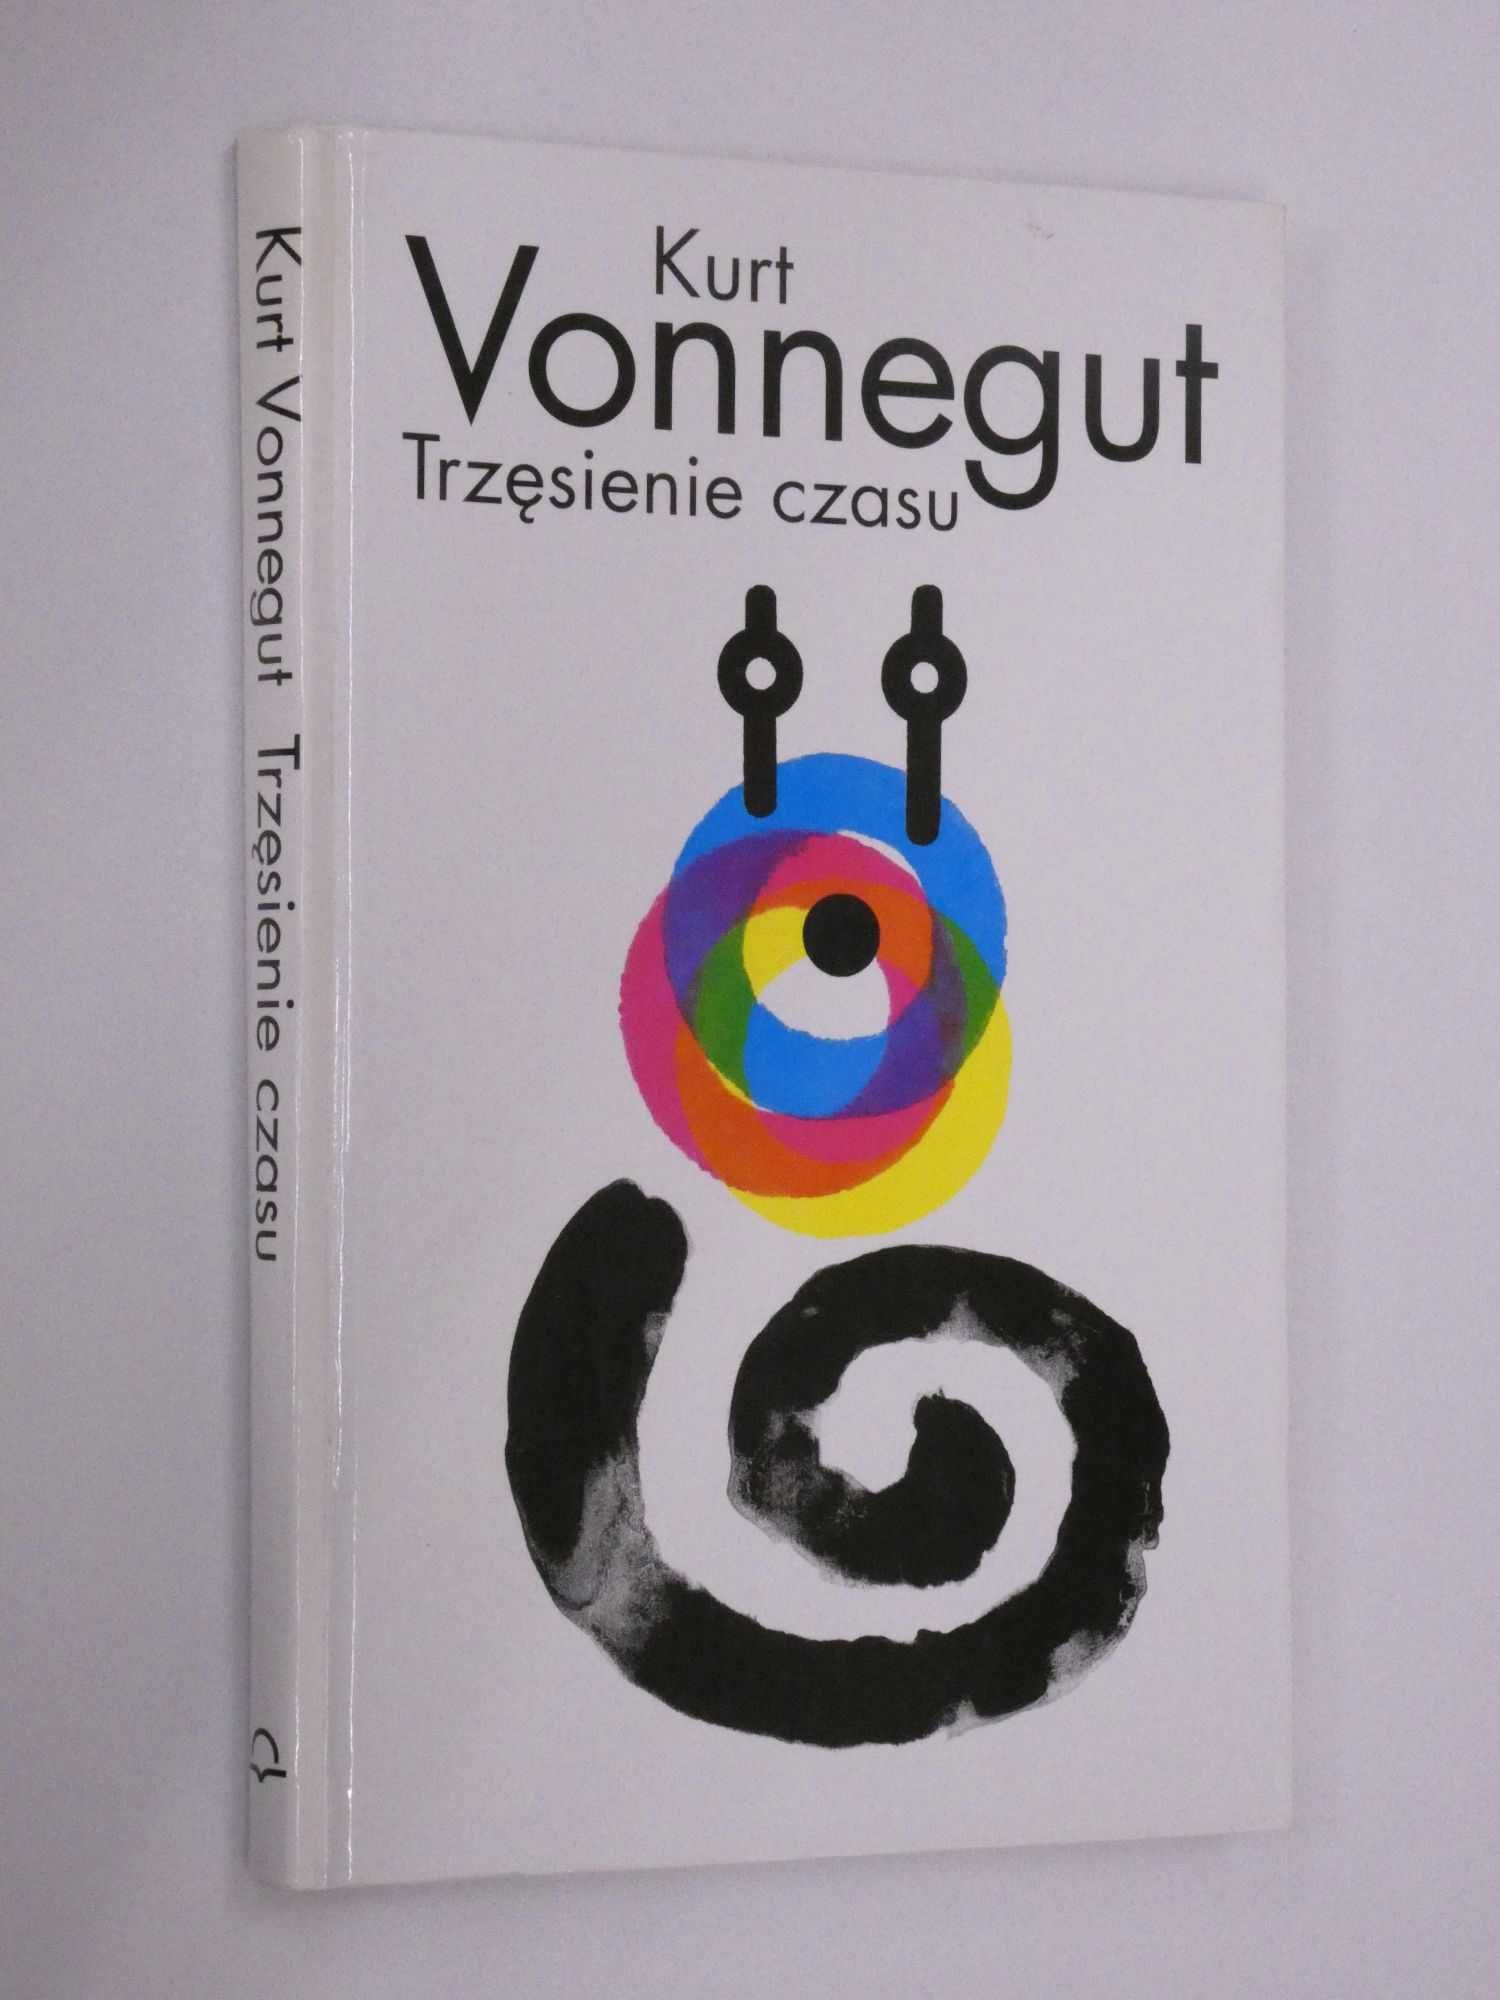 Trzęsienie czasu Vonnegut